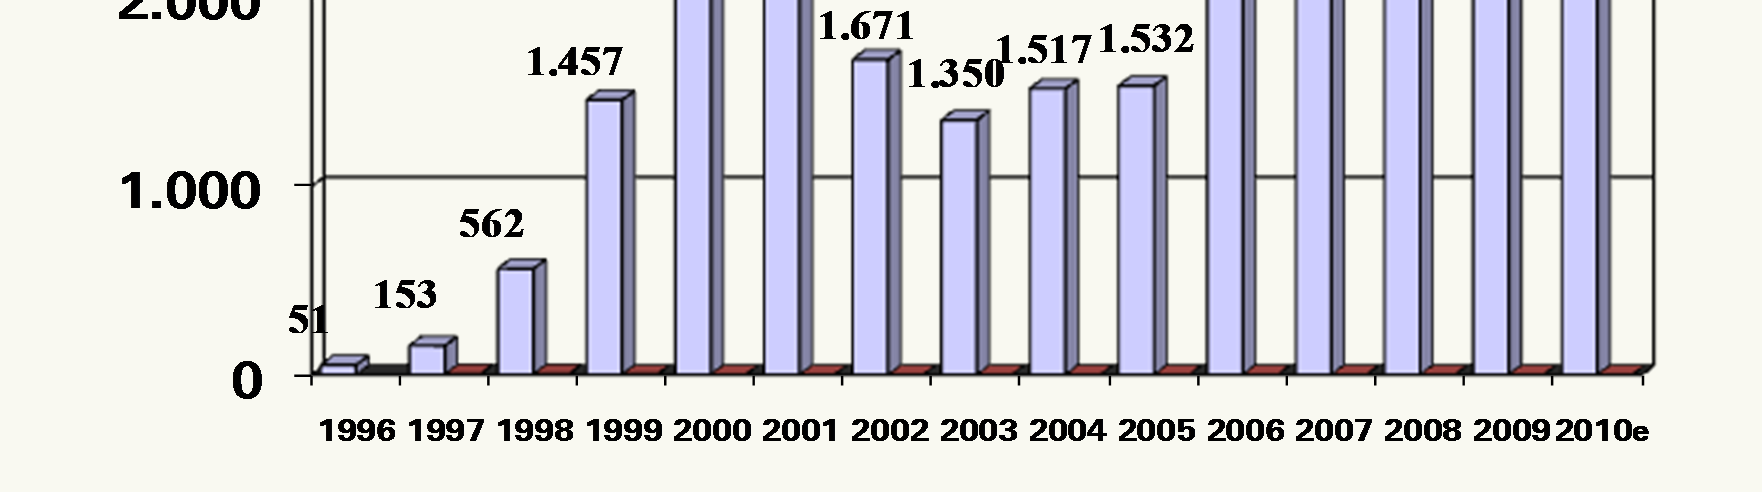 Umsatz 1996-2010e